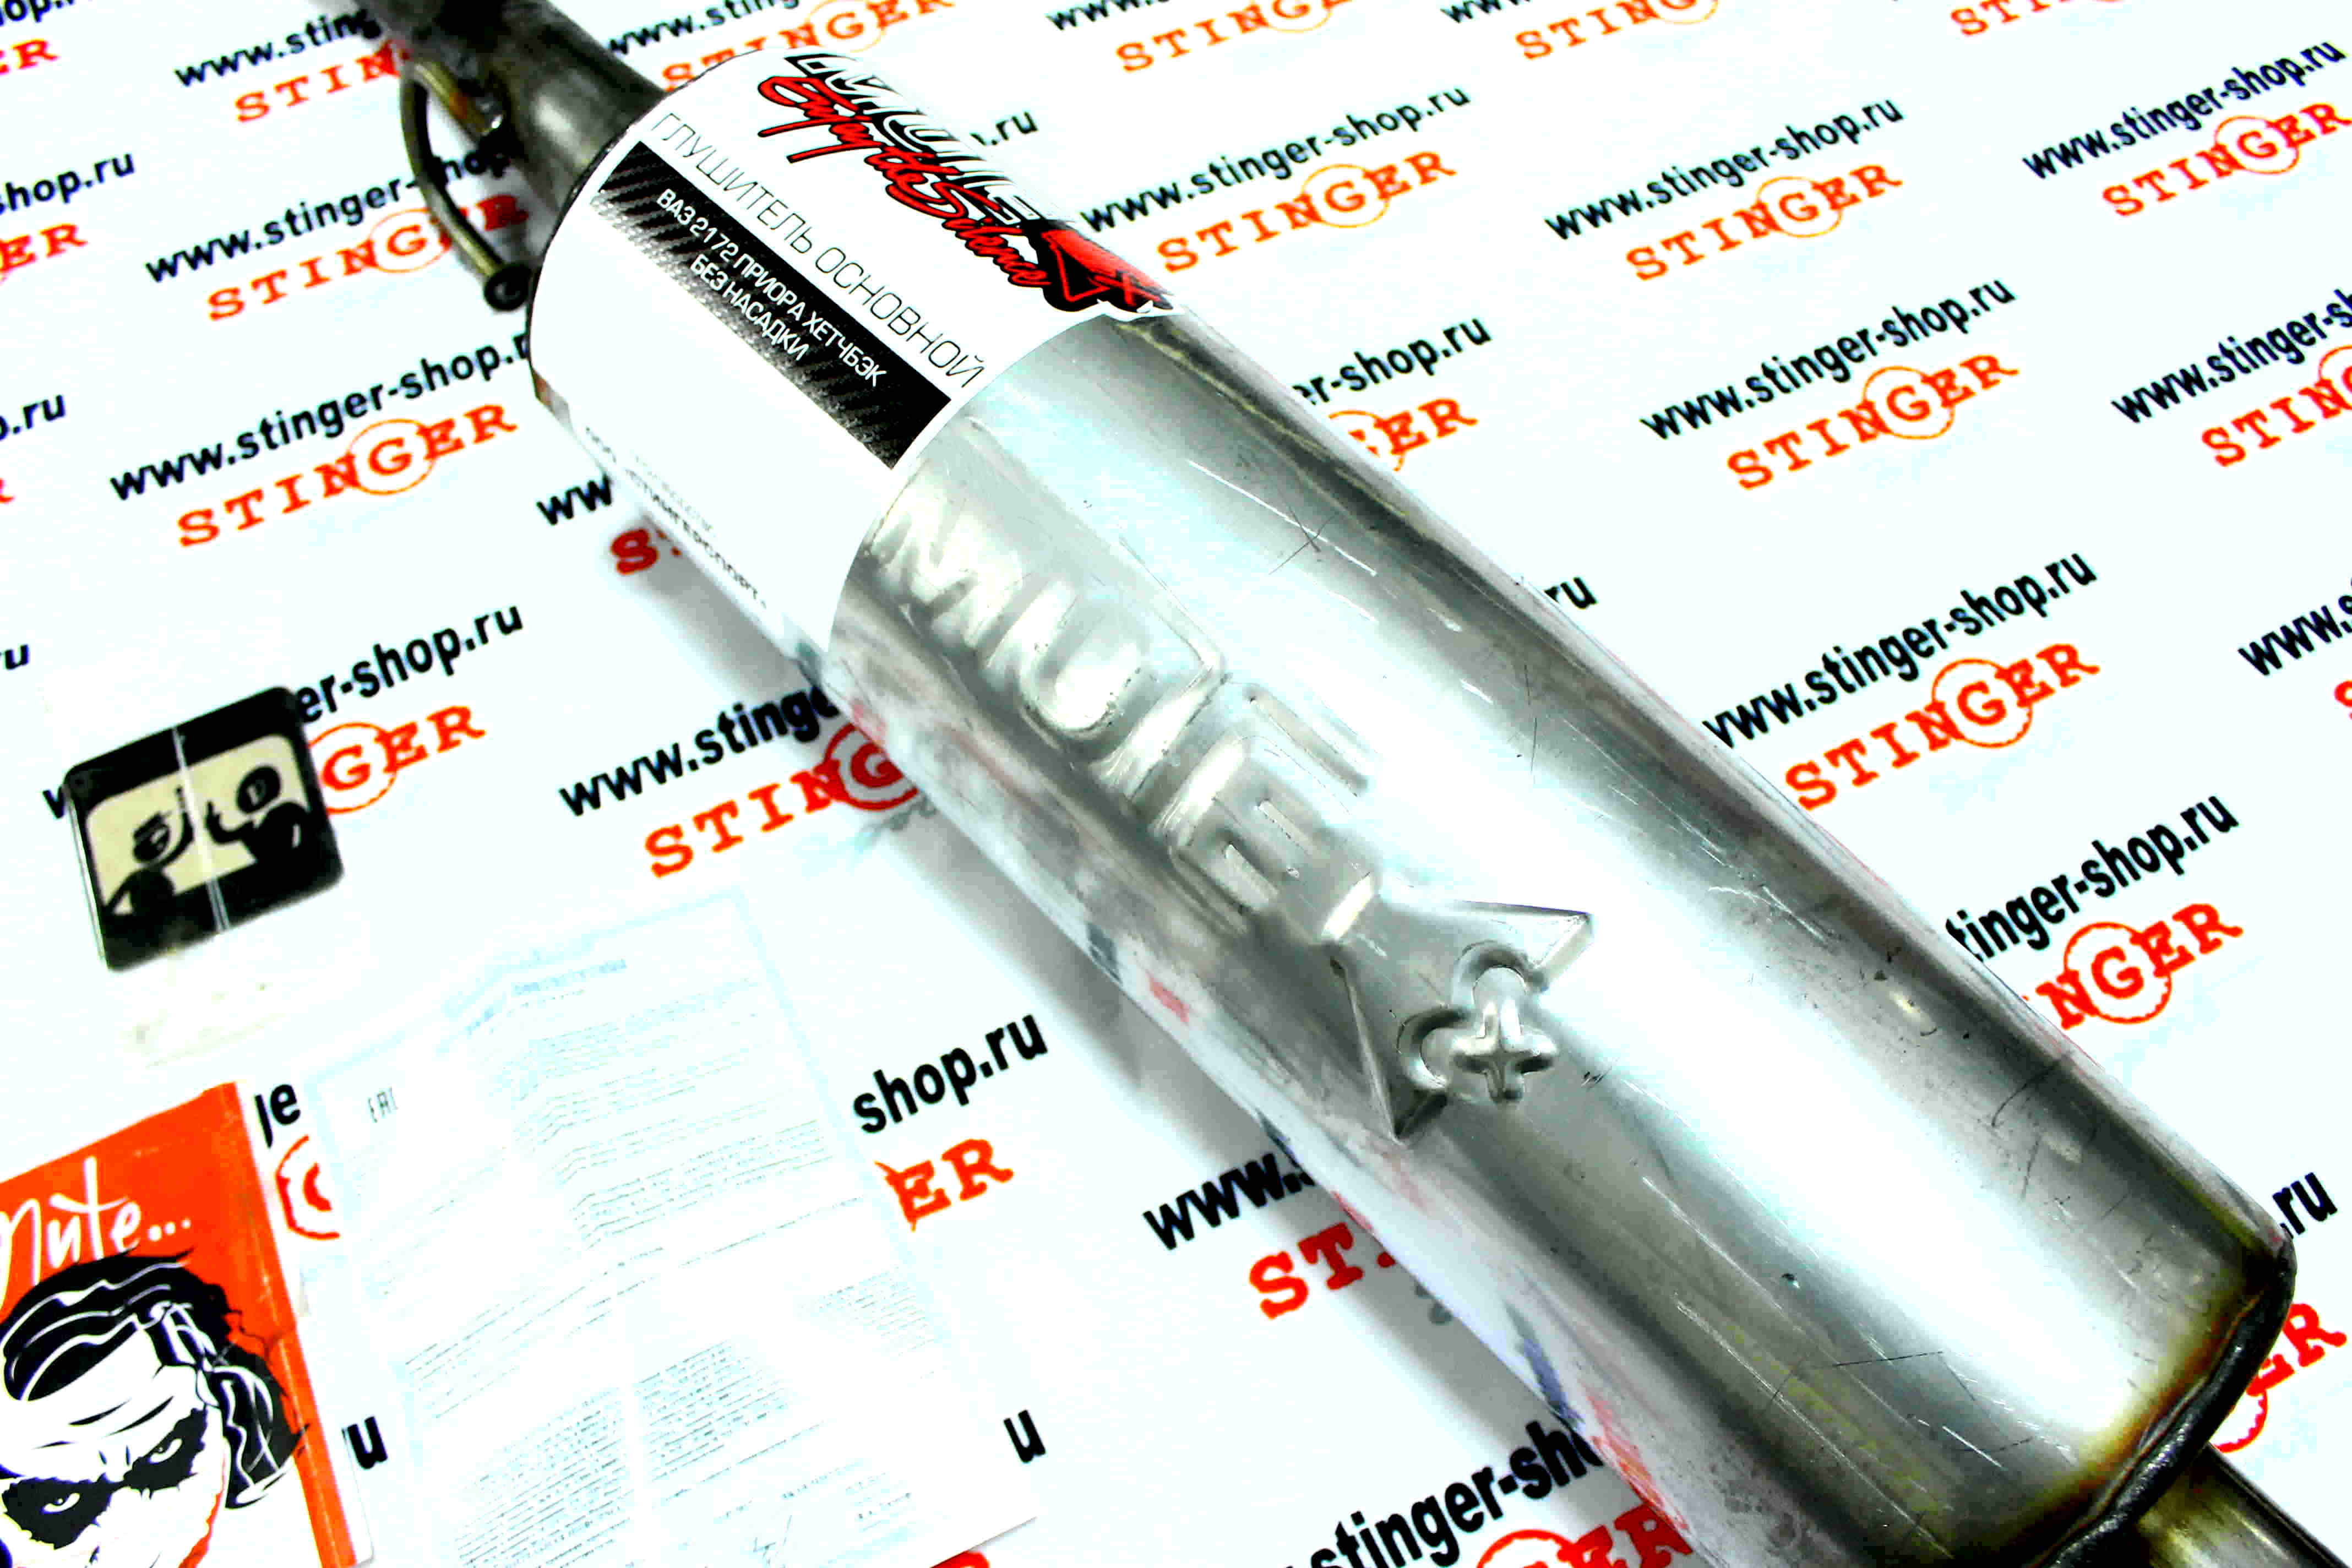 Глушитель основной "MUTE" для а/м ВАЗ 2172 Приора хетчбэк без насадки (нержавеющая  сталь). Фото �2